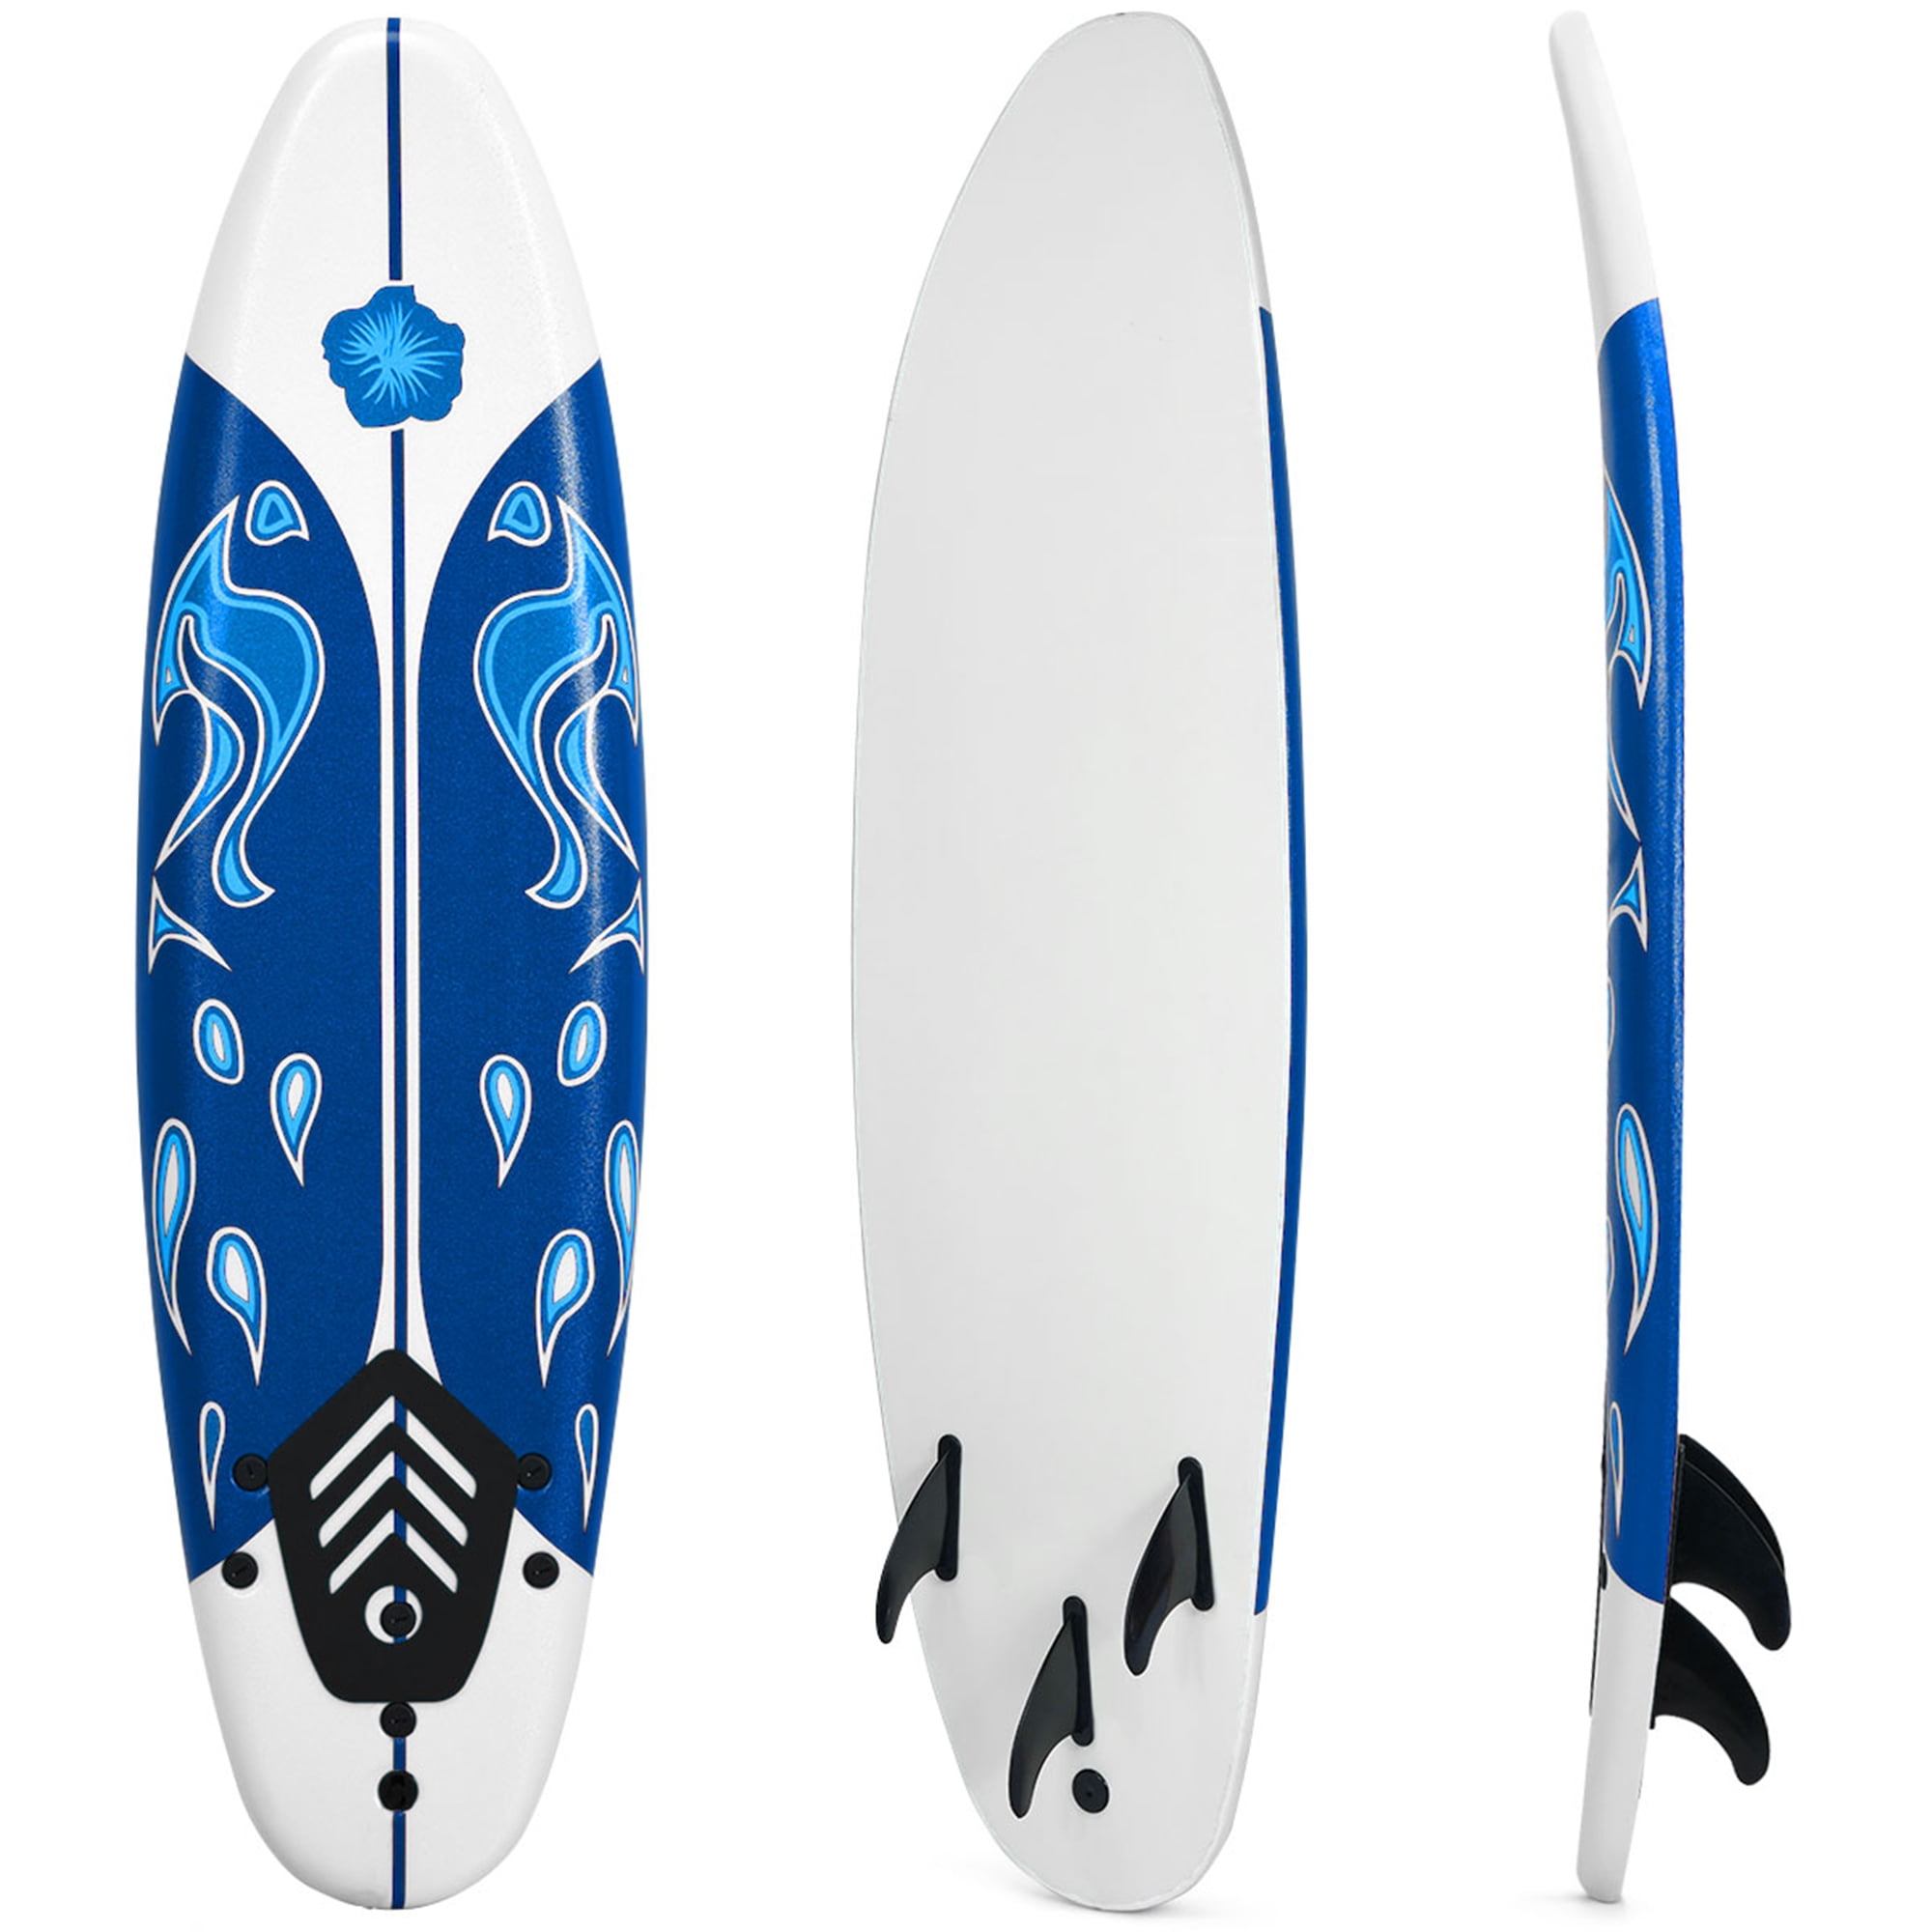 Gymax Planche de Surf 6ft avec 3 Ailerons Amovibles et Leash de SÃ©curitÃ©  | Walmart Canada